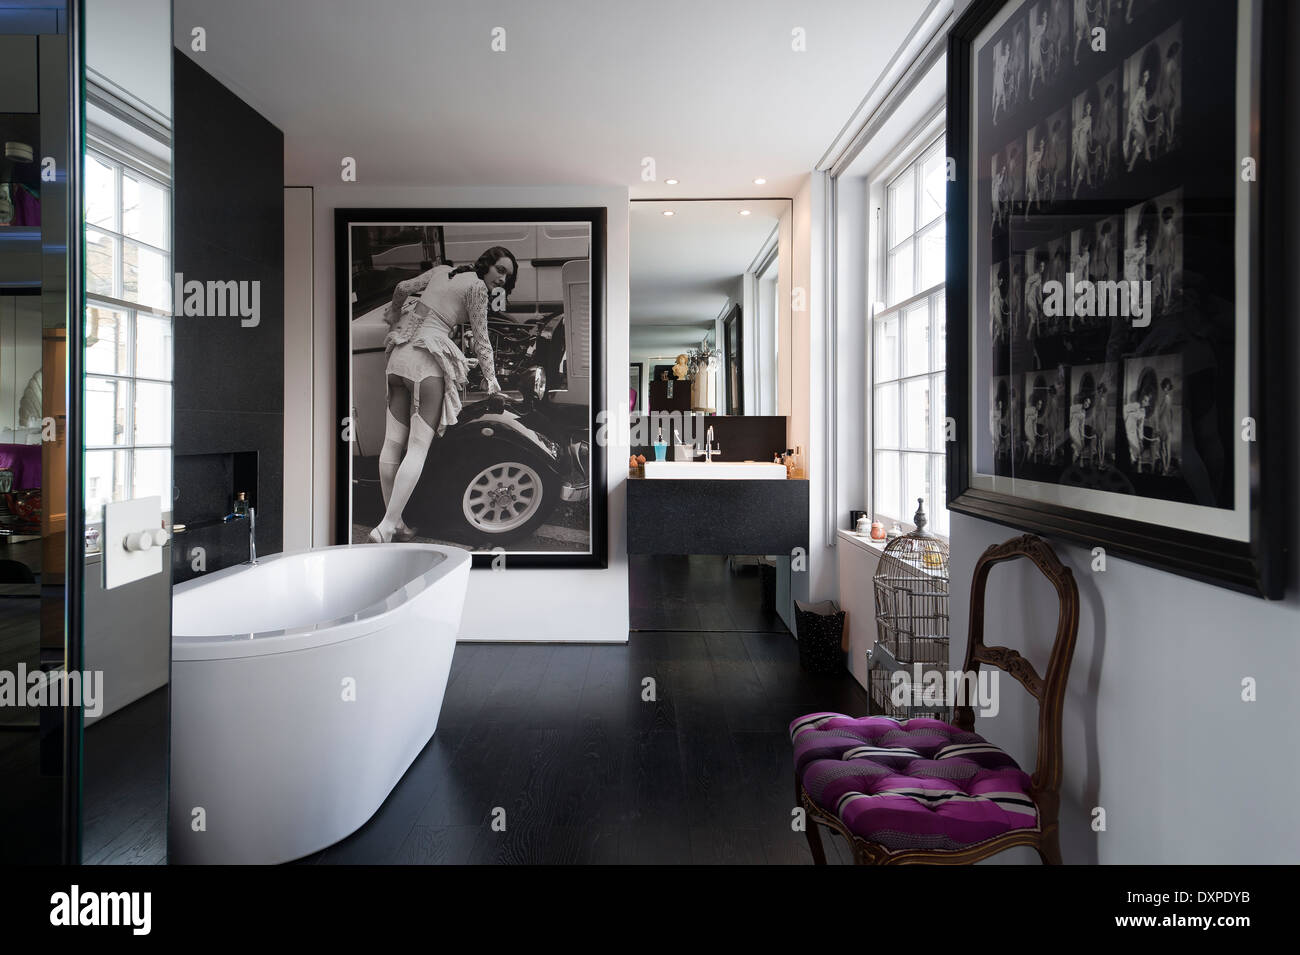 Bagno moderno con in bianco e nero poster fotografici e bianco vasca free standing Foto Stock